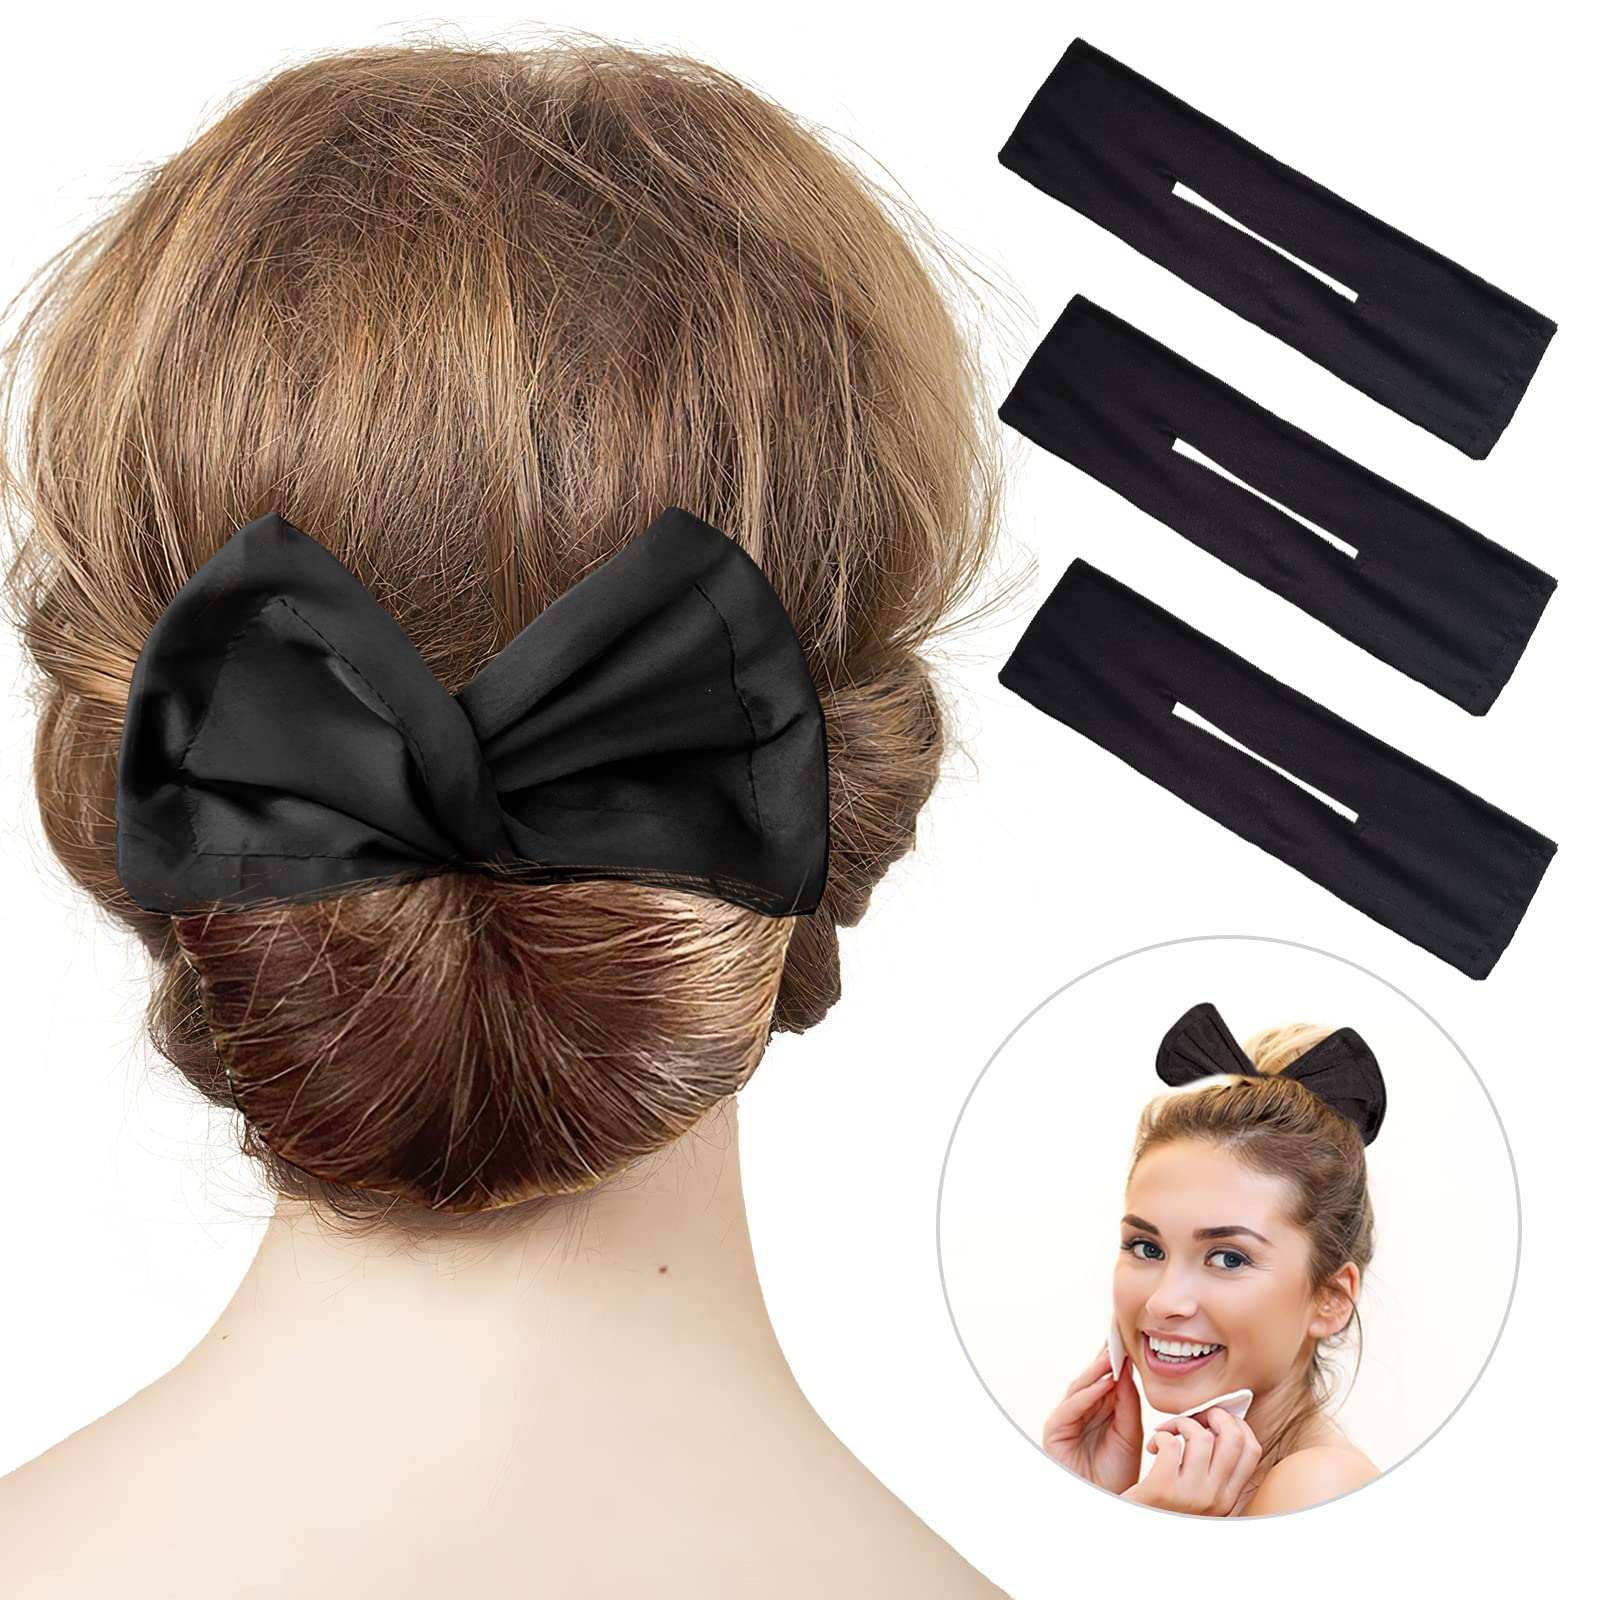 3 Pieces Hair Maker Deft Bun for Hair Twister, Flexible Donut Hair Bun, Lazy Hair Curler Bun Clips, Fashion French Hairstyle, Hair Accessories for Women & Kids (Black) 3 PCS (Black)